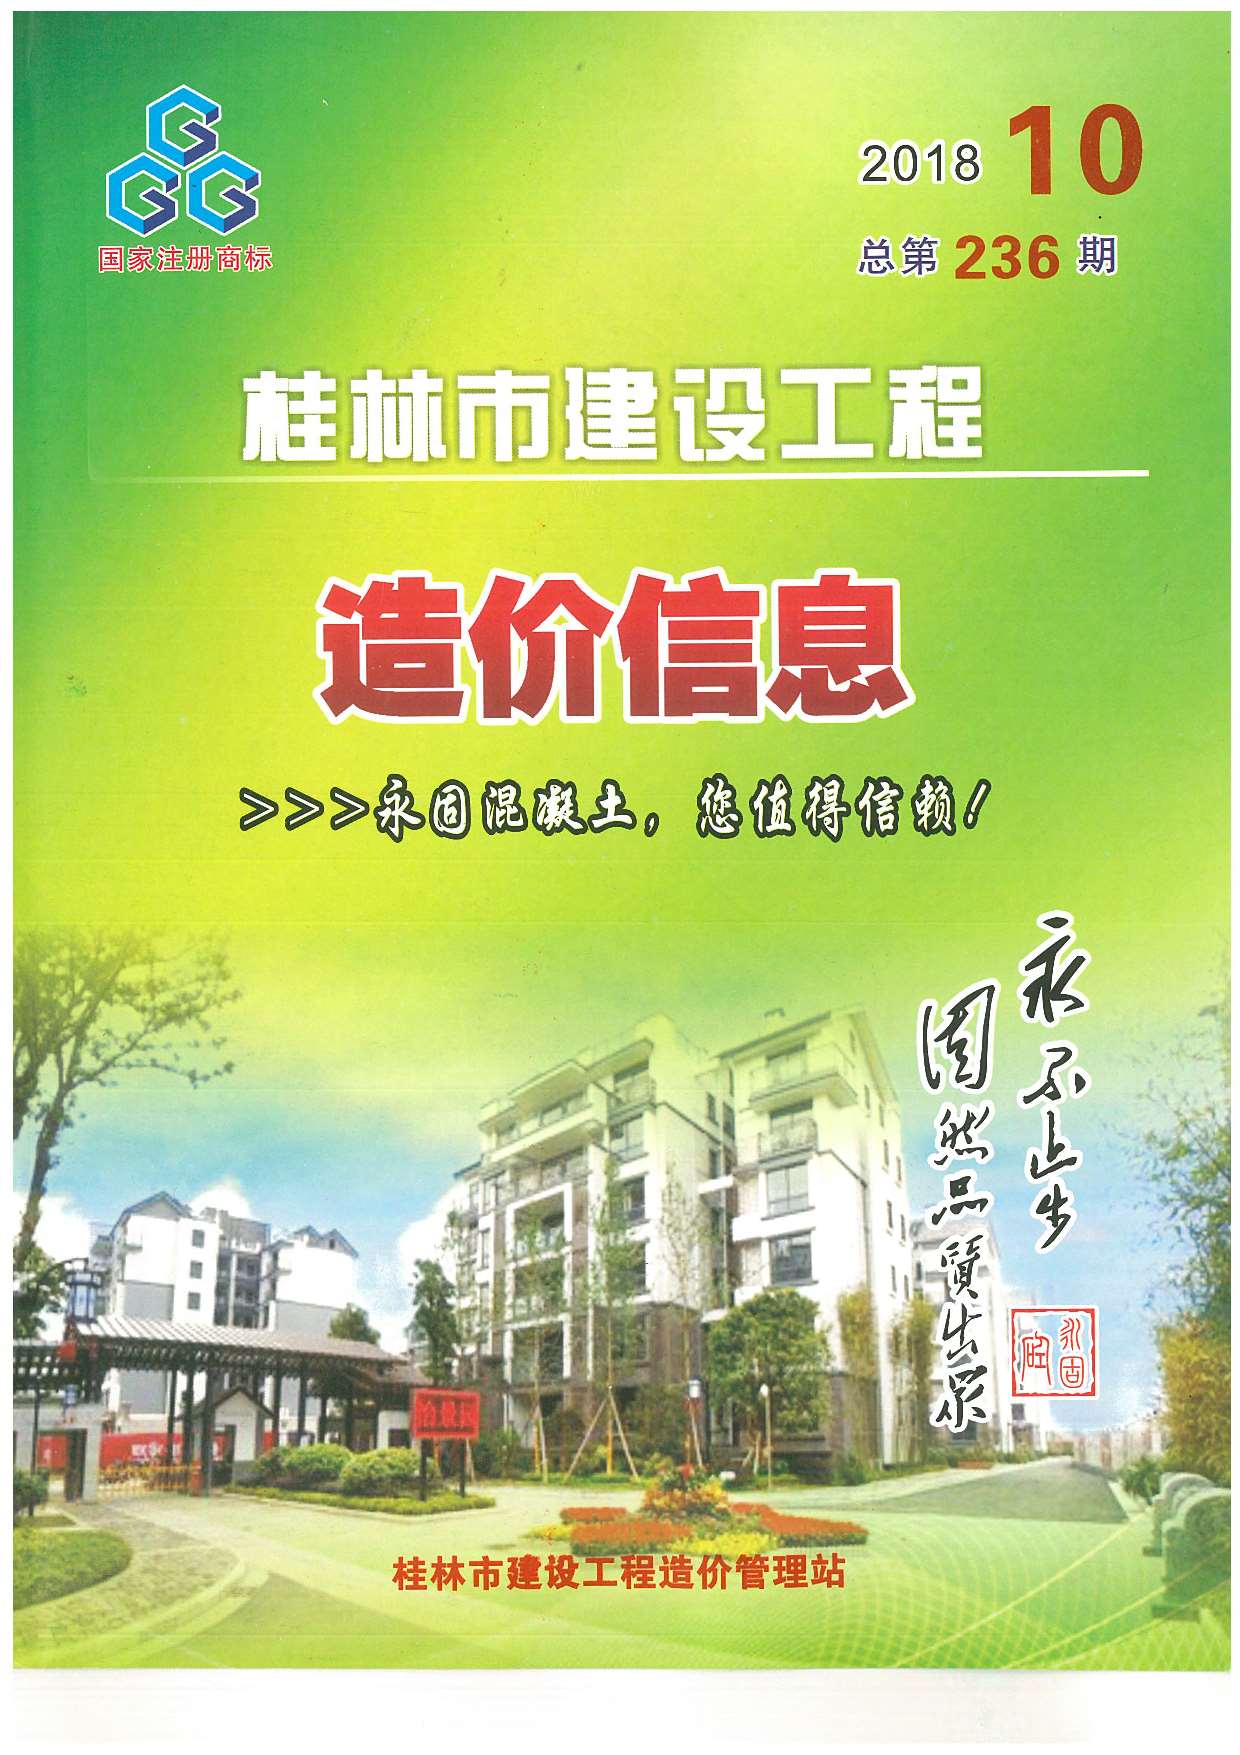 桂林市2018年10月建设工程造价信息造价库信息价